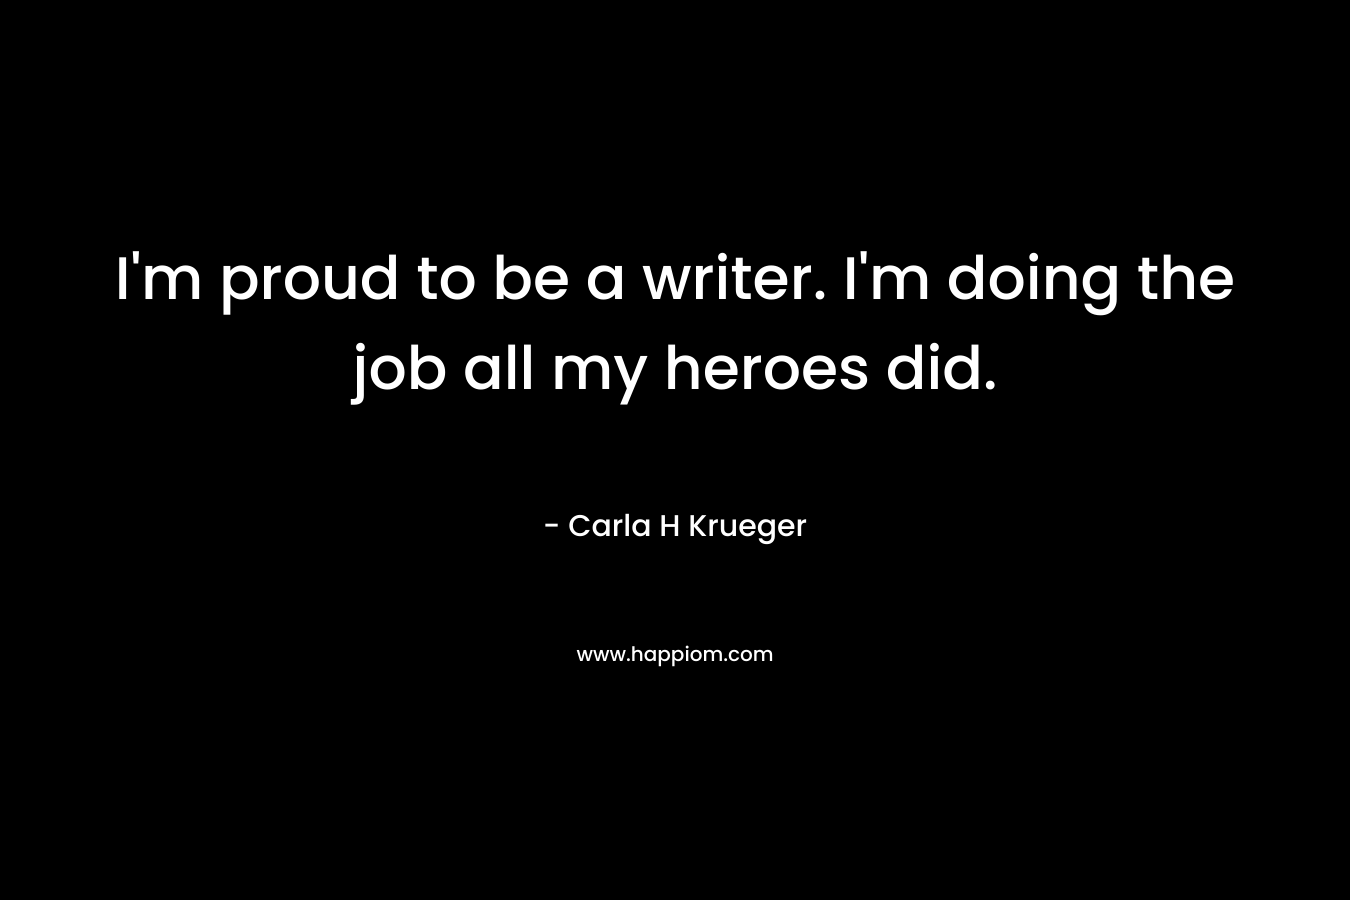 I'm proud to be a writer. I'm doing the job all my heroes did.